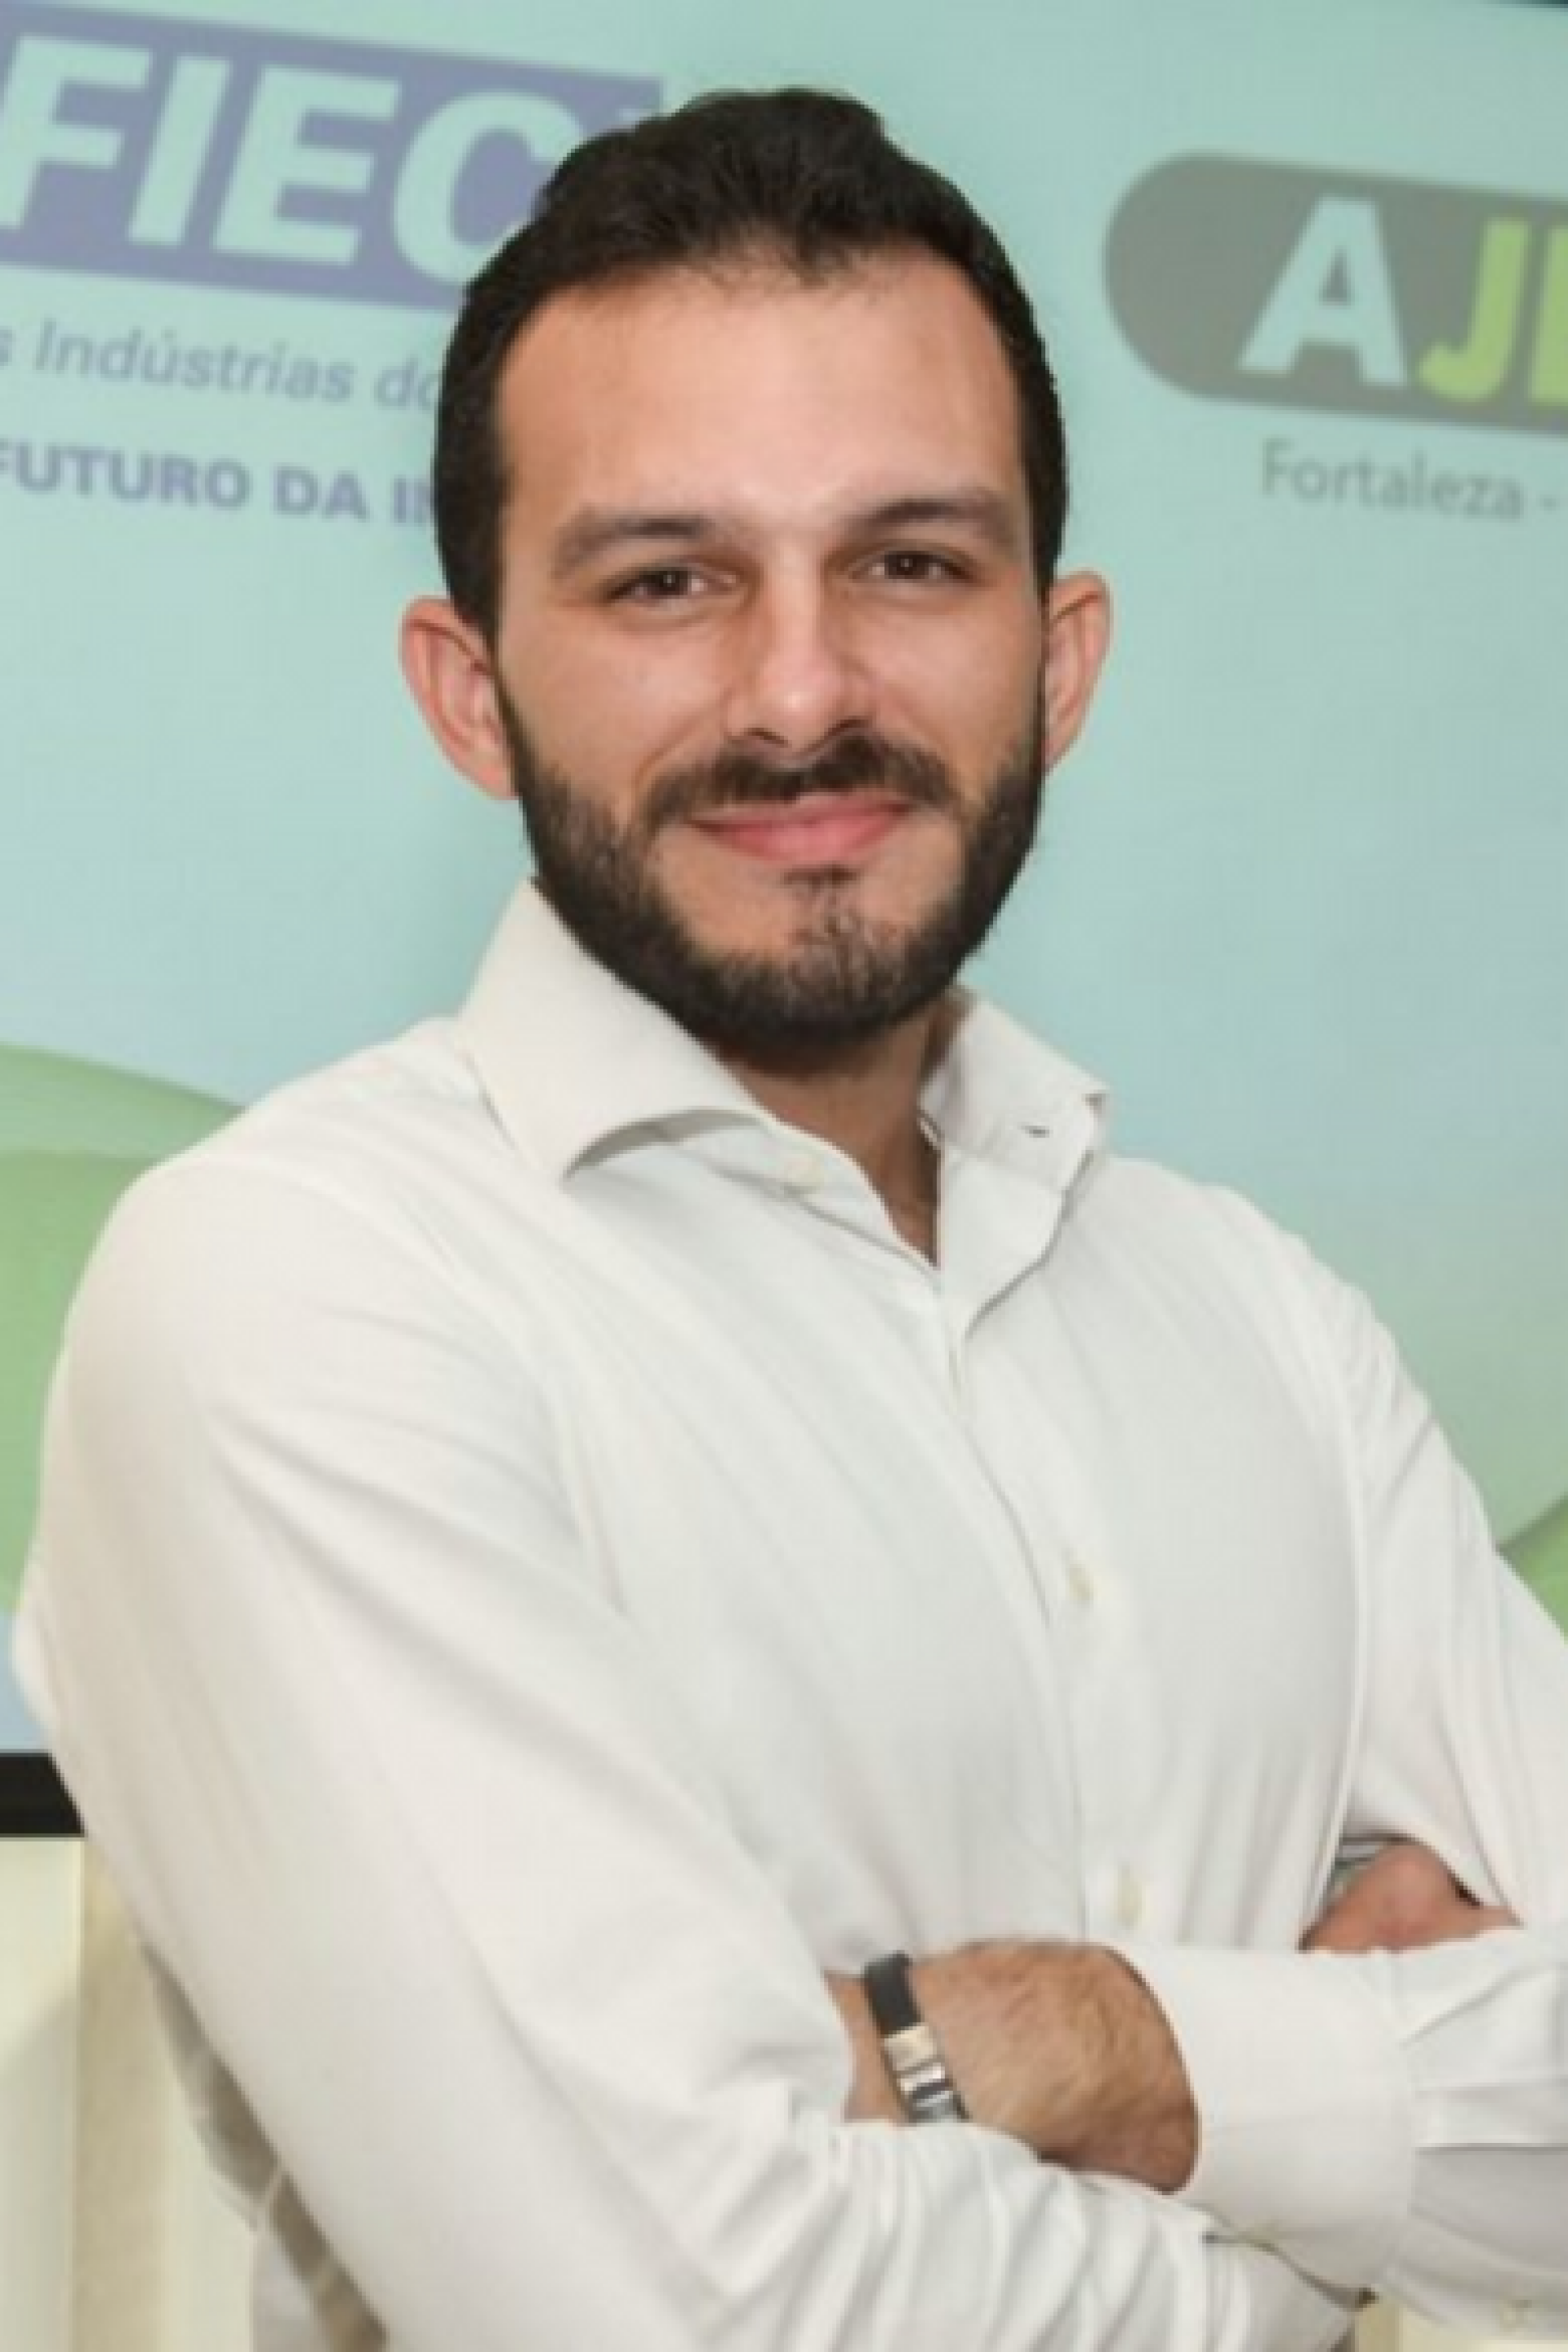 George Martins- coordenador geral da Associação dos Jovens Empresários (AJE) de Fortaleza